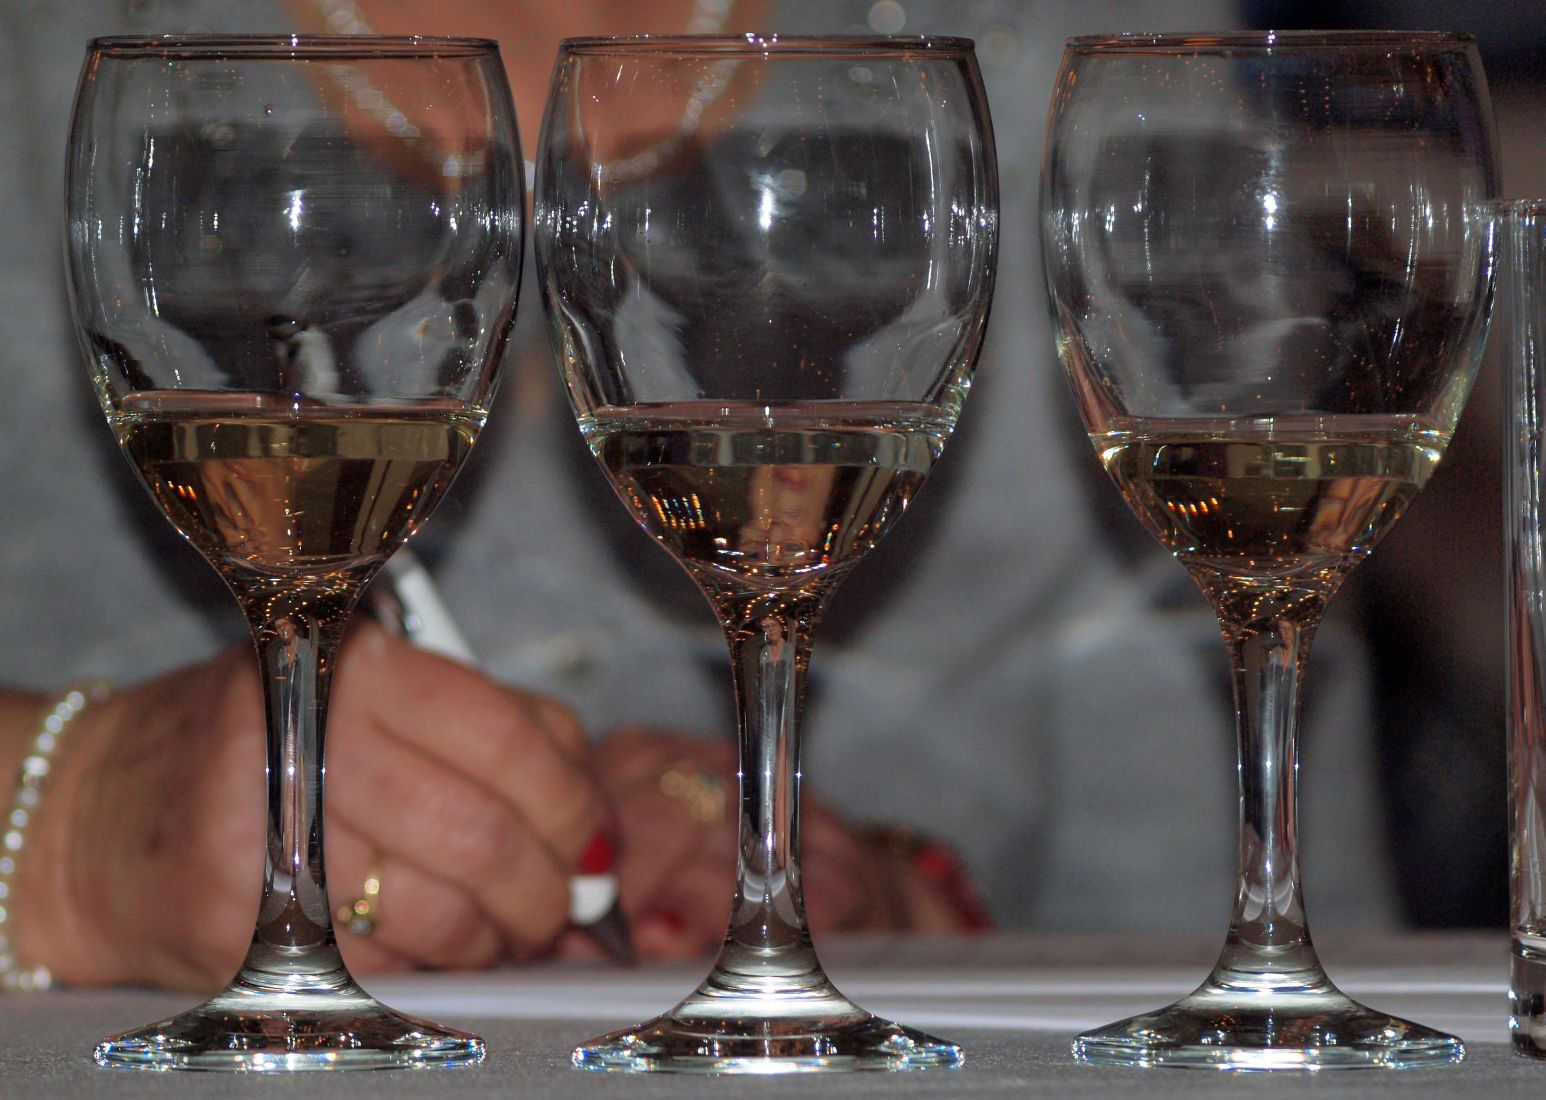 Във вино, произведено след 2011 г., били открити високи нива на цезий-137